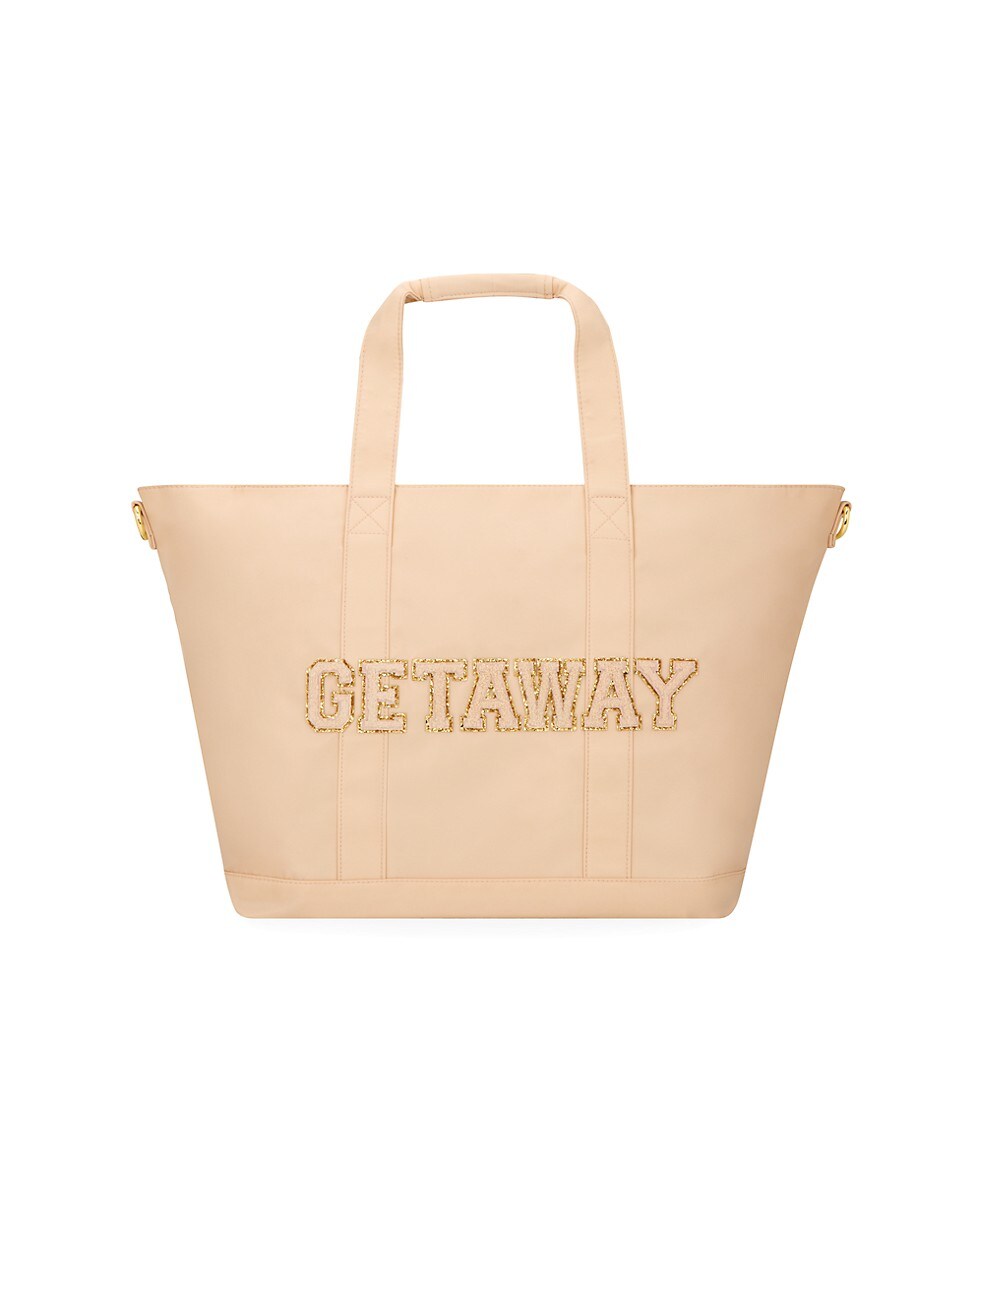 Getaway Tote Bag - Stoney Clover Lane